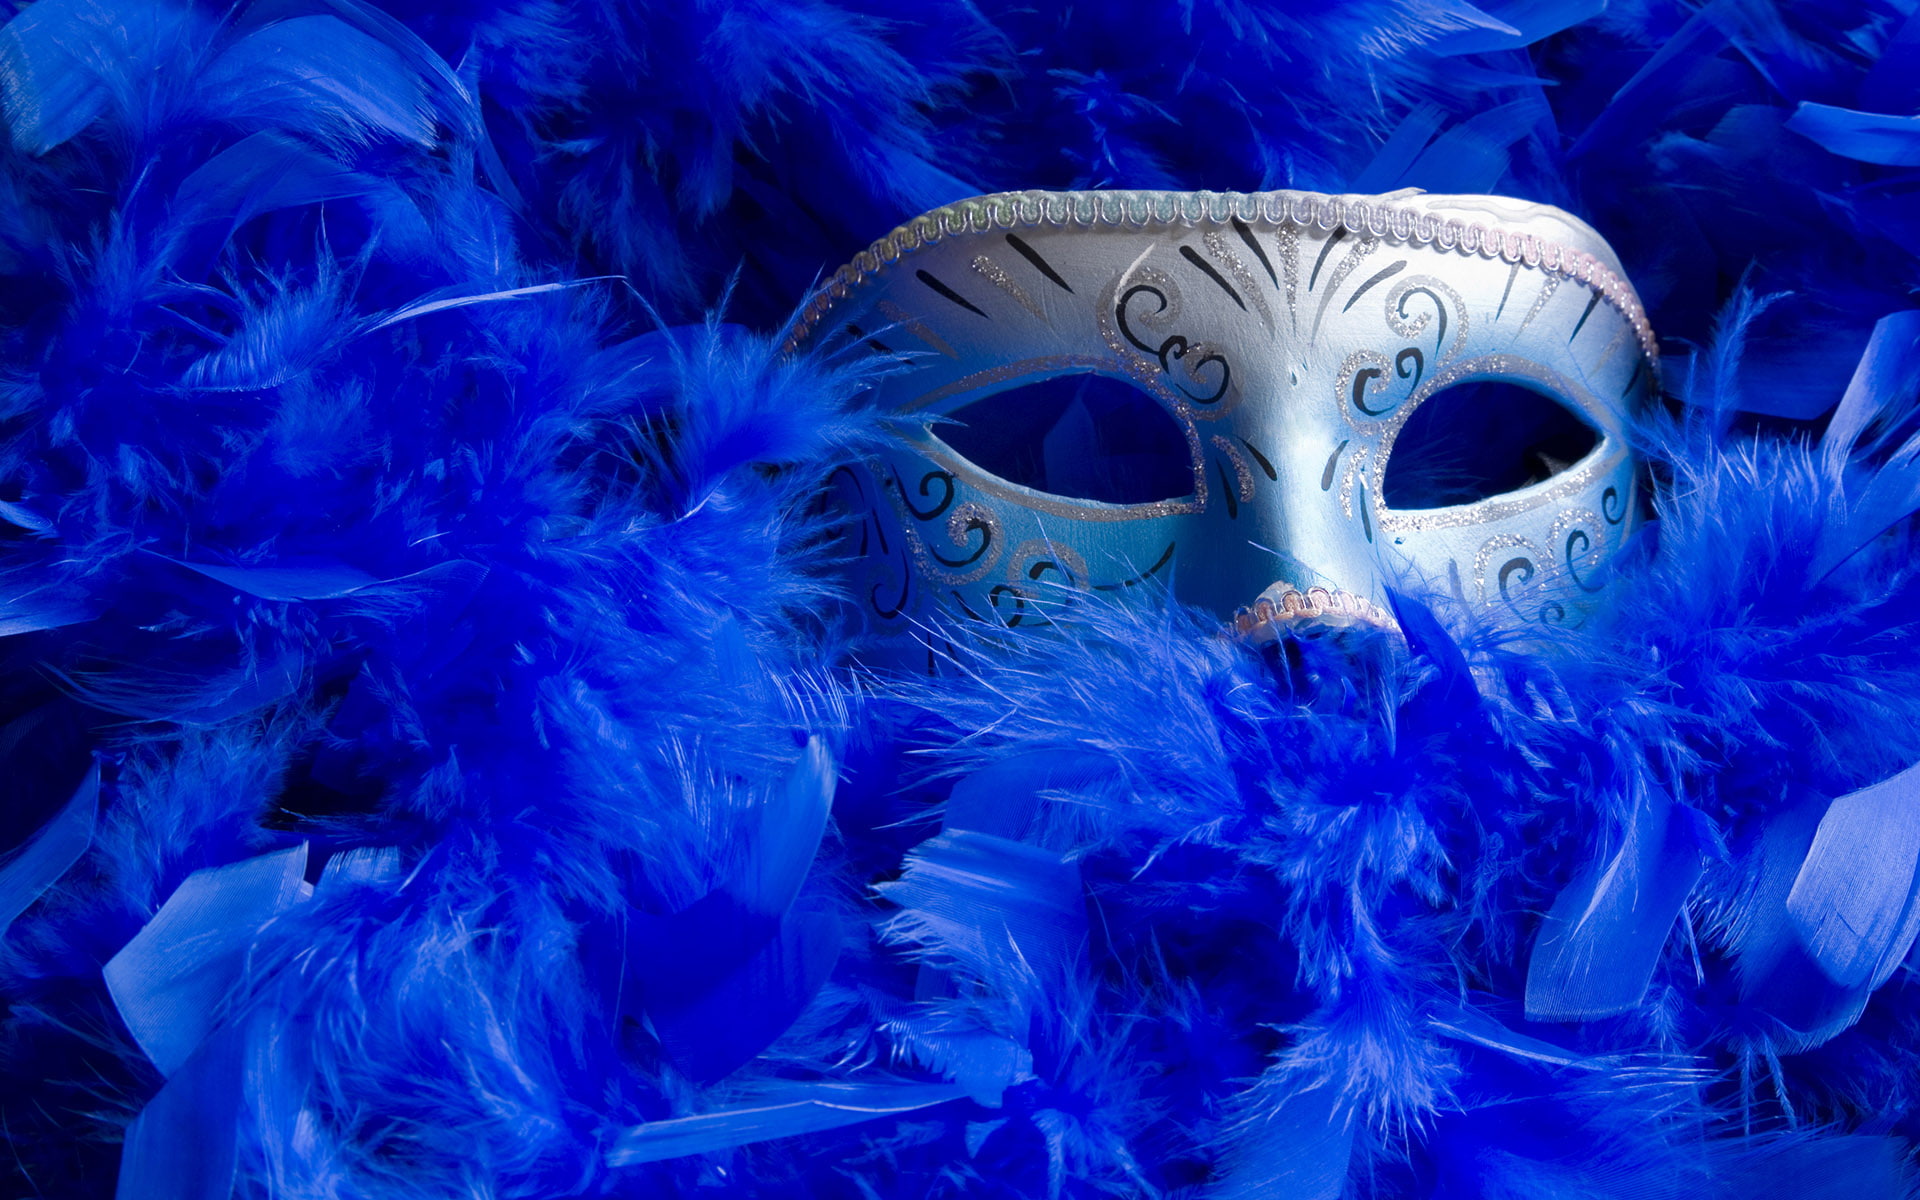 Masquerade Mask, grey masquerade